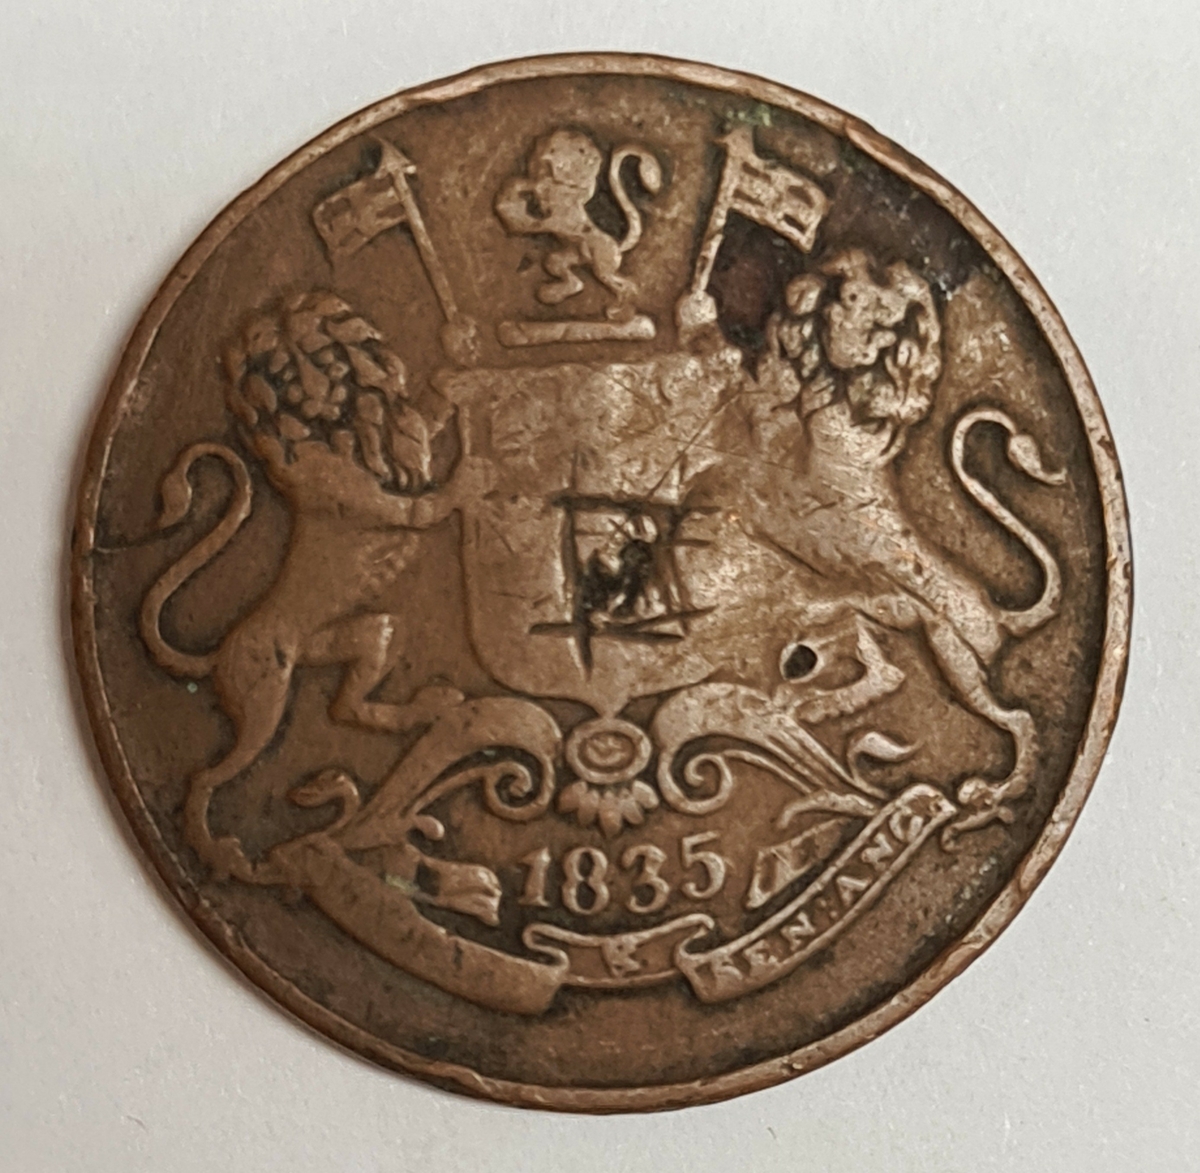 Tre mynt från Indien/Storbritanien.
1/4 Anna, 1835
1/4 Anna, 1858
1/4 Anna, 1858